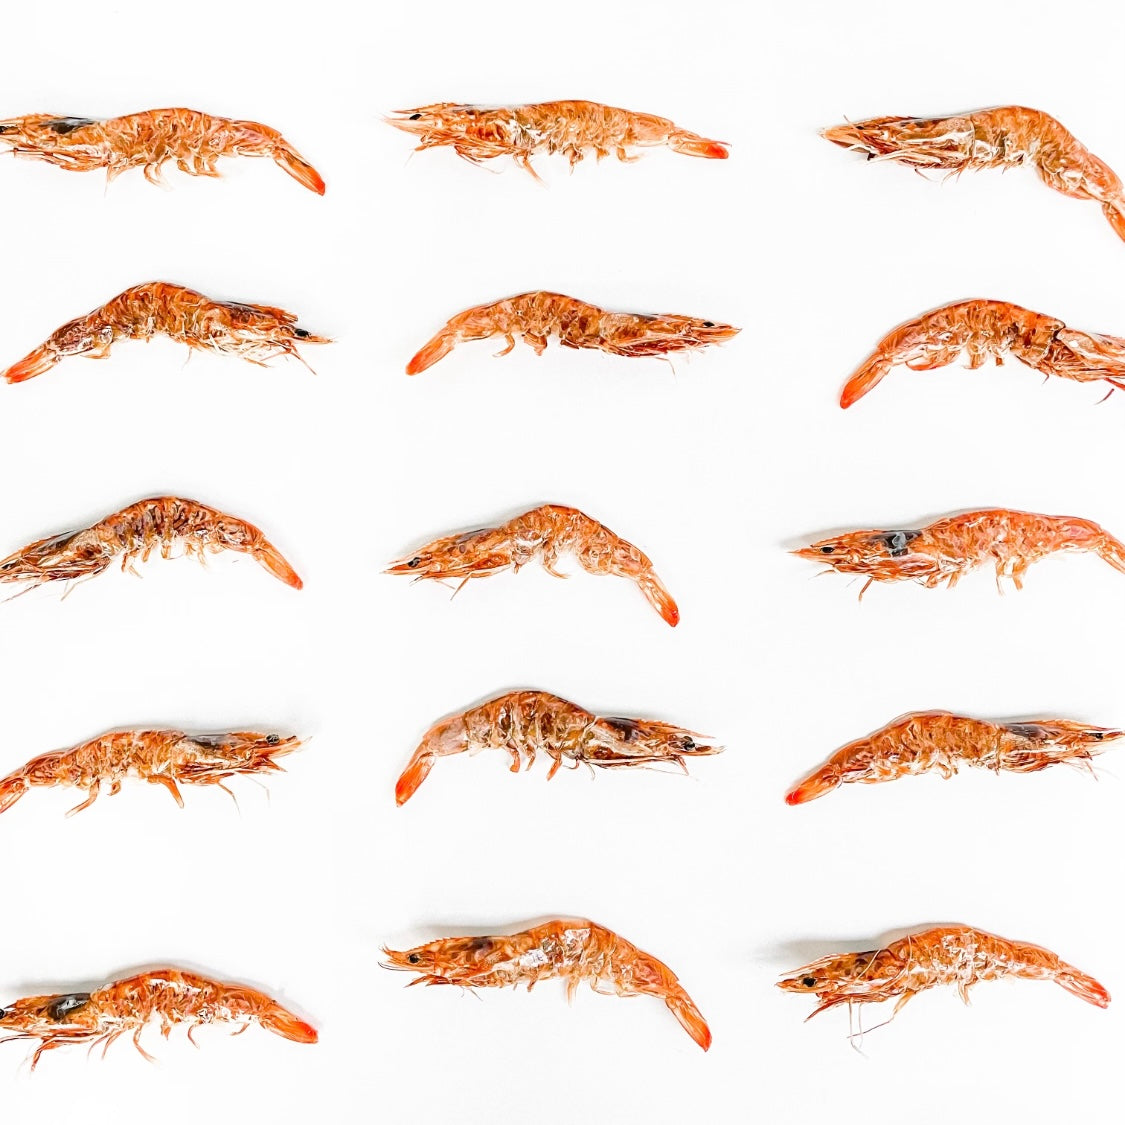 Coopmonsters - Shrimp Chips – The Public Pet